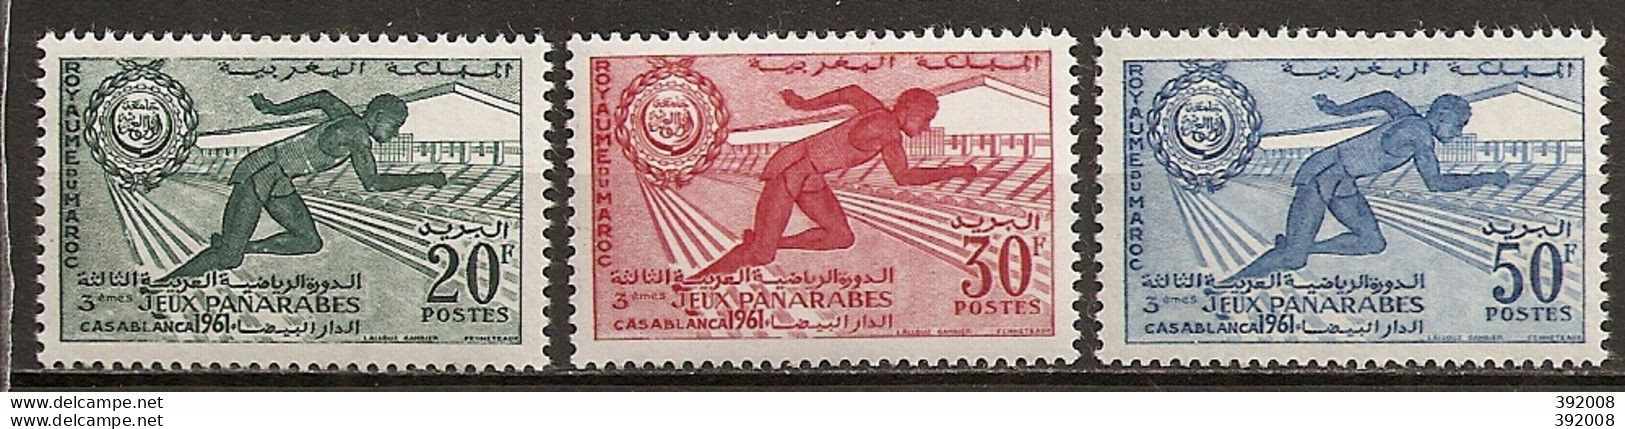 1961 - N° 421 à 423*MH - 3° Jeux Panarabes à Casablanca - Morocco (1956-...)